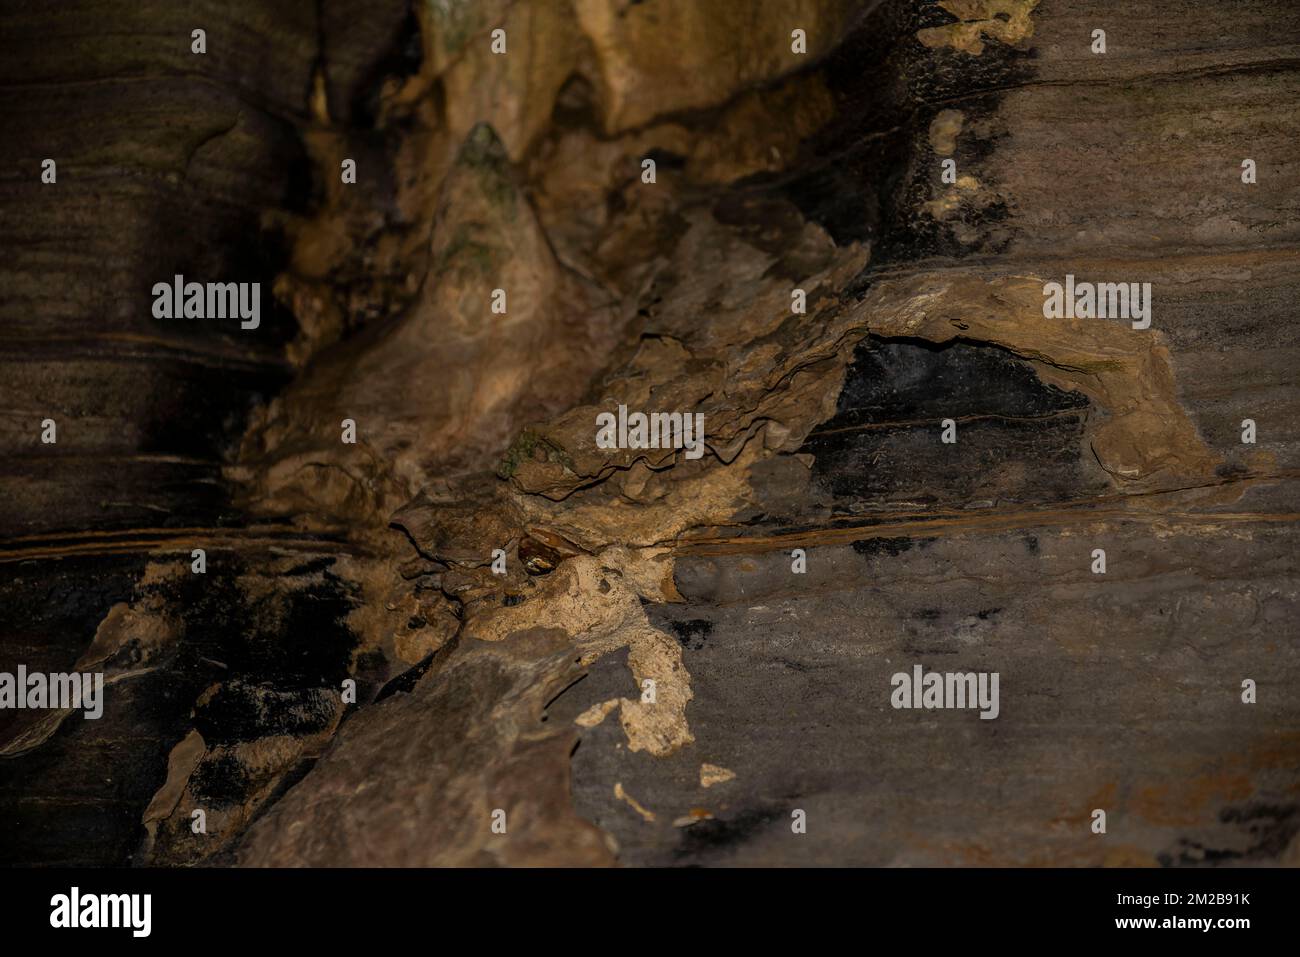 L'art abstrait de la nature dans les grottes Howe Caverns de New York Banque D'Images